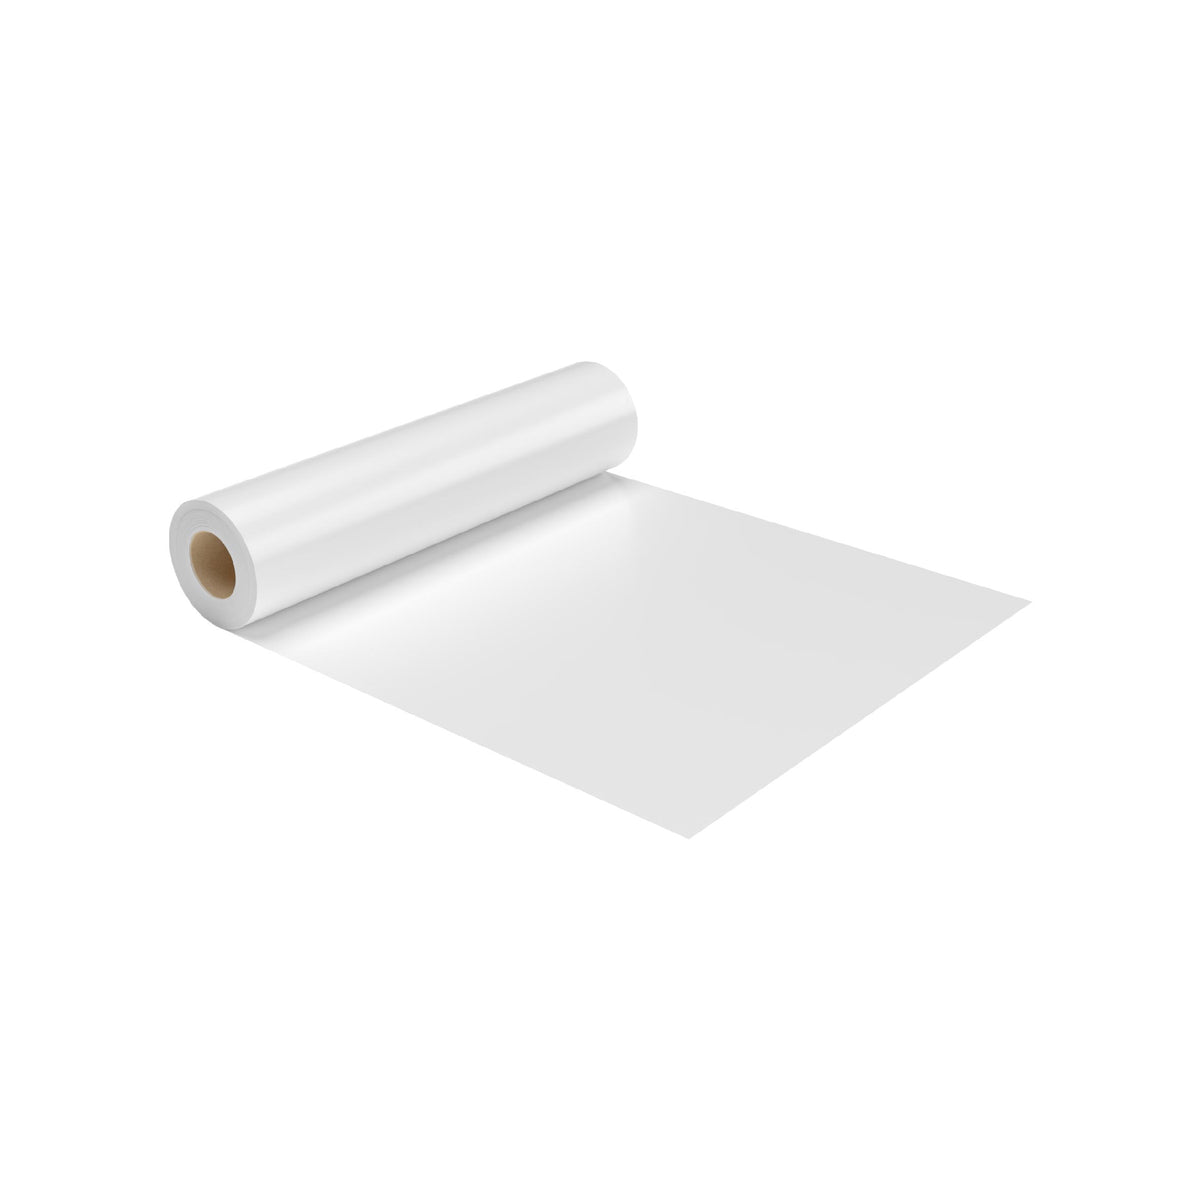 White Sofra Table Sheet - Hotpack Global